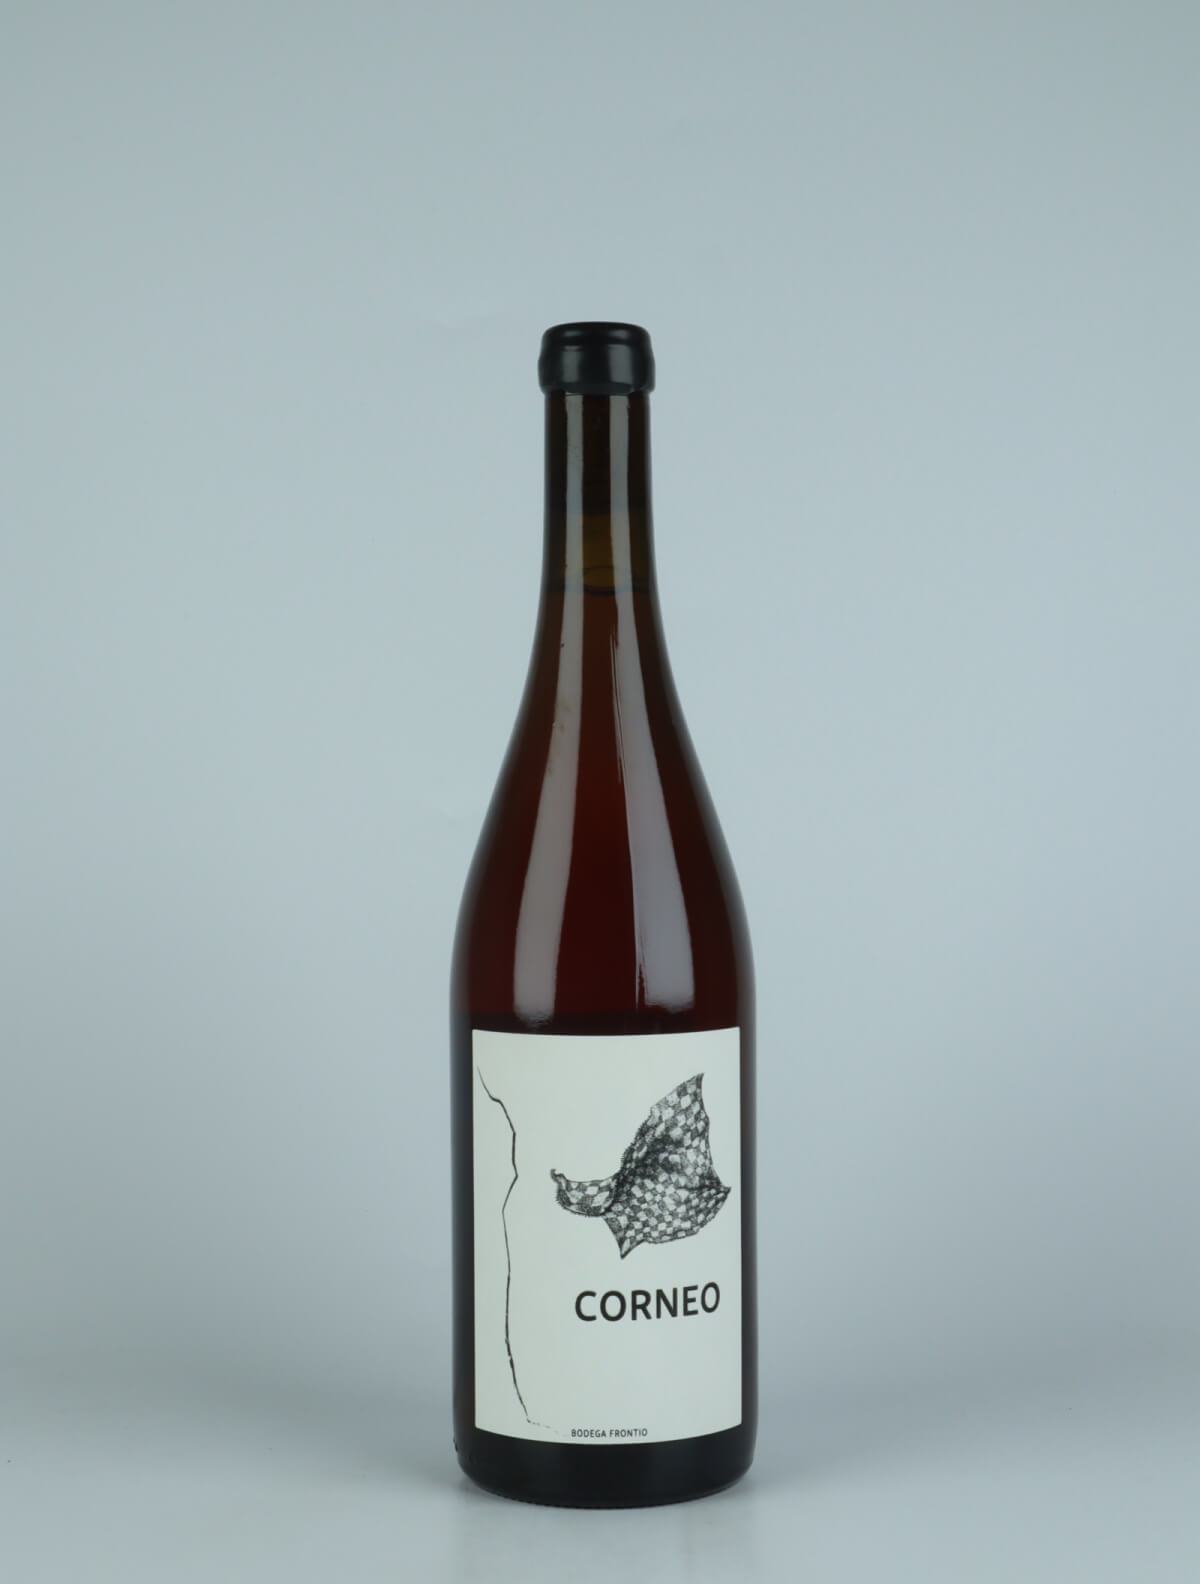 En flaske 2021 Corneo Rosé fra Bodega Frontio, Arribes i Spanien